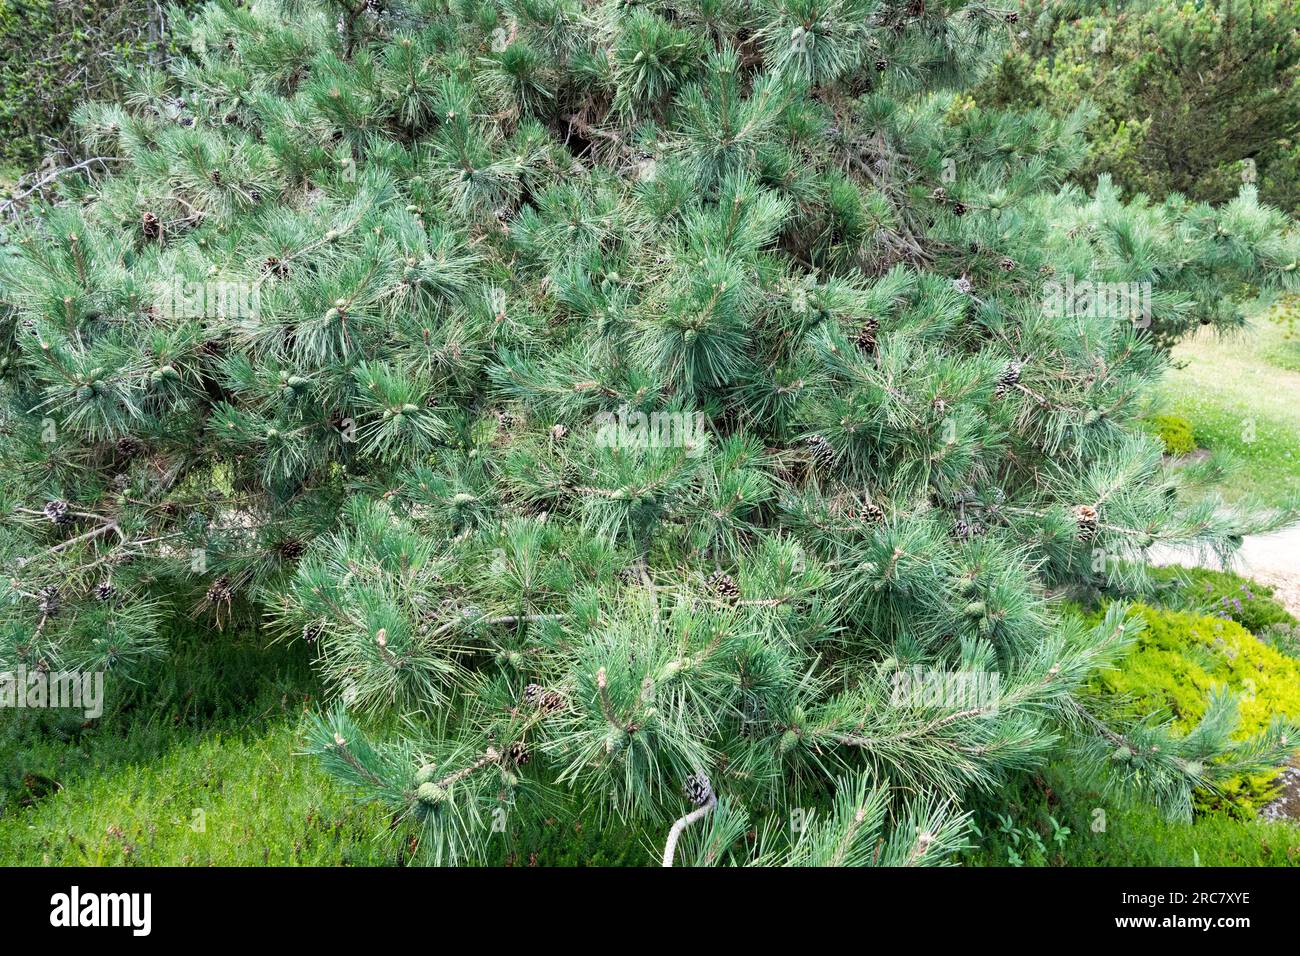 Chinese Red Pine, Pinus tabuliformis var. mukdensis tree Stock Photo